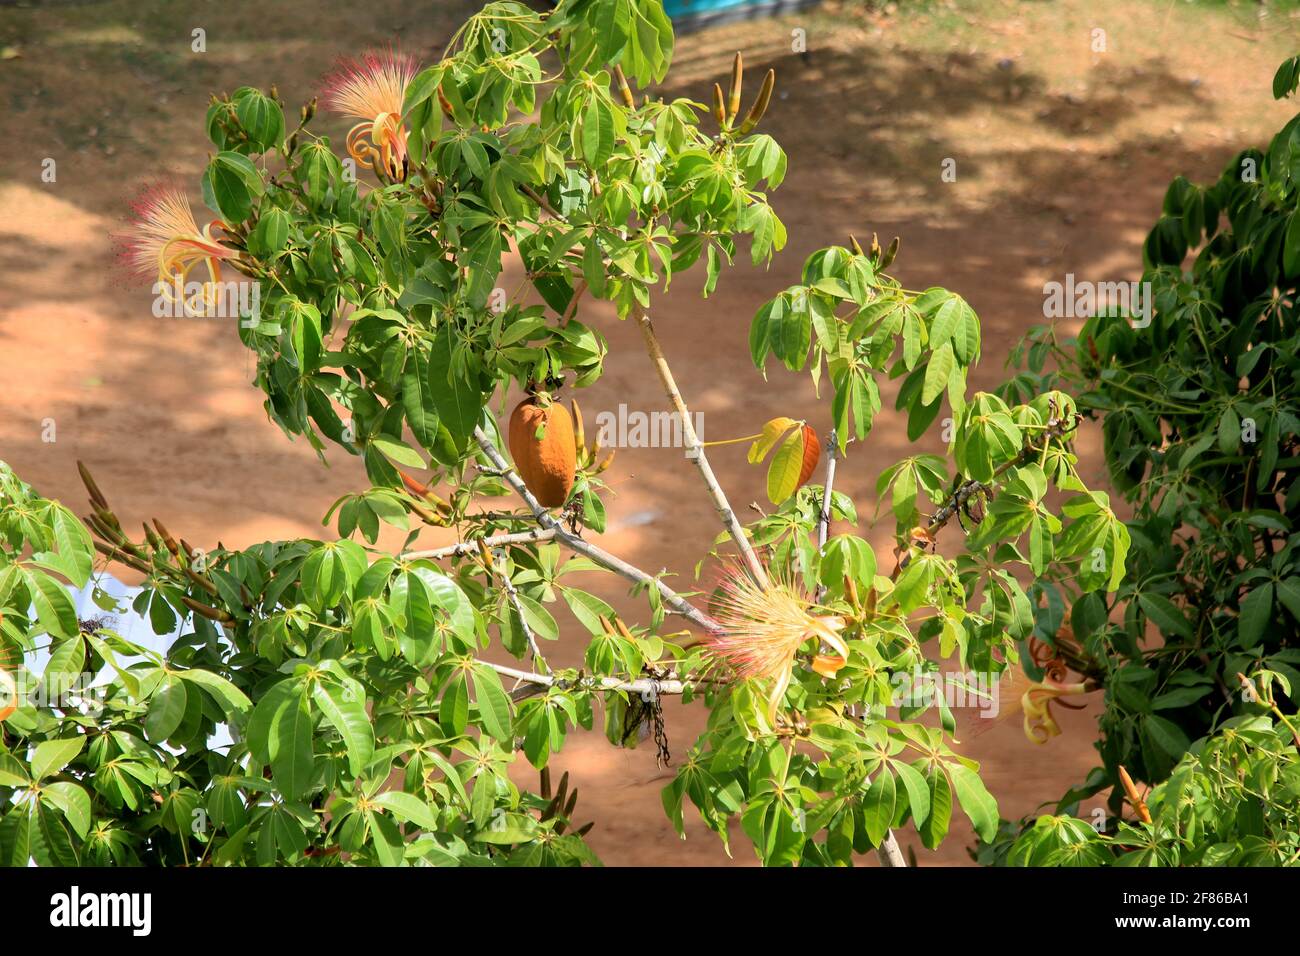 salvador, bahia, brazil - january 6, 2021: monguba fruit (Pachira aquatica Aubl.), popularly known as munguba, castanhola, chestnut-of-maranhao, cocoa Stock Photo